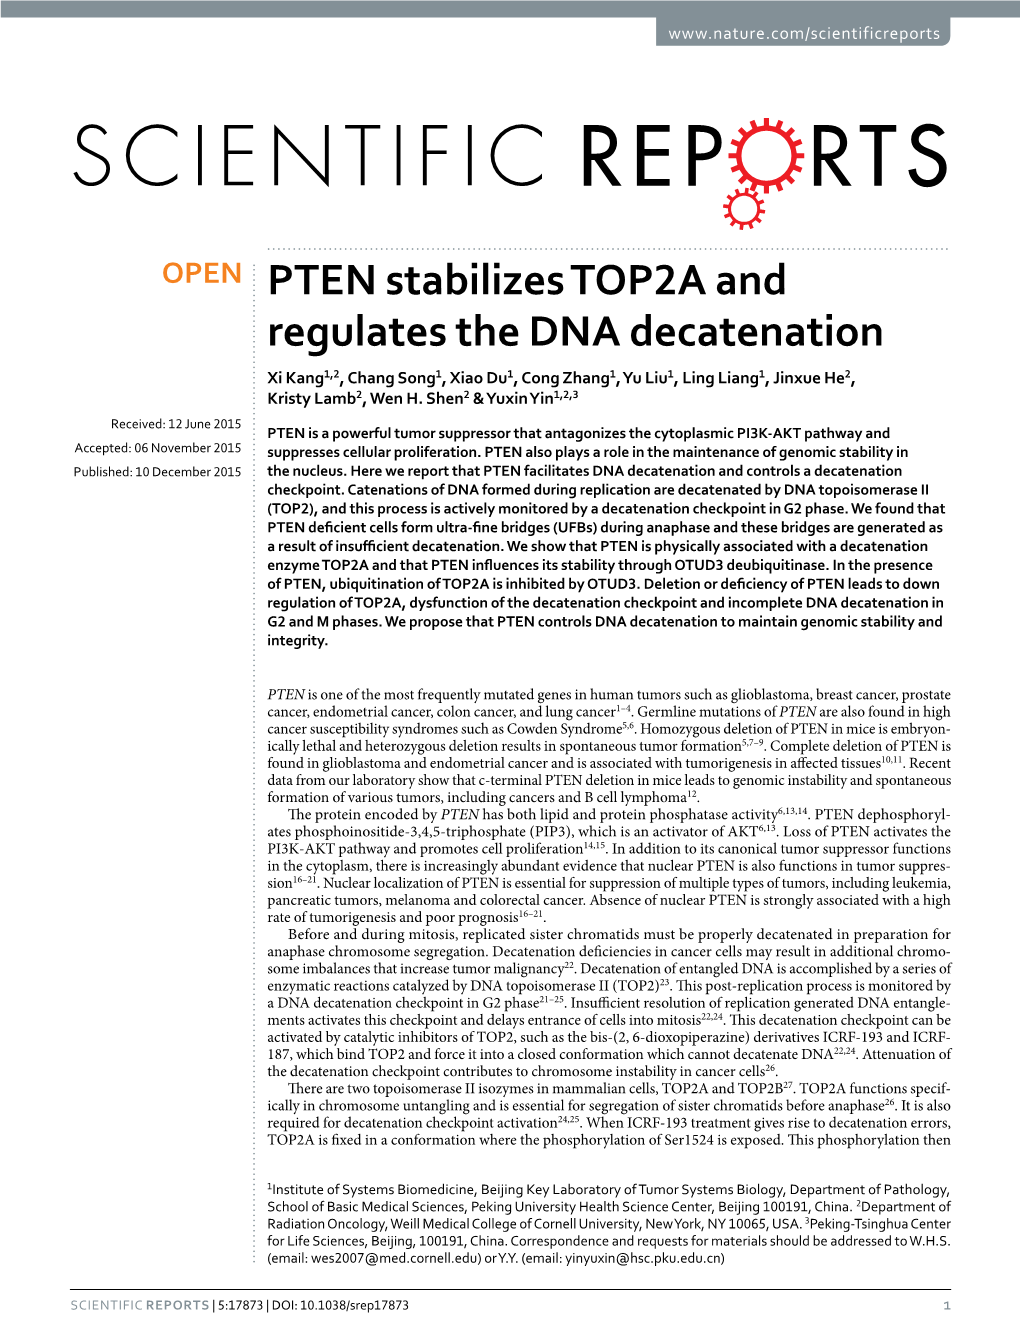 PTEN Stabilizes TOP2A and Regulates the DNA Decatenation Xi Kang1,2, Chang Song1, Xiao Du1, Cong Zhang1, Yu Liu1, Ling Liang1, Jinxue He2, Kristy Lamb2, Wen H